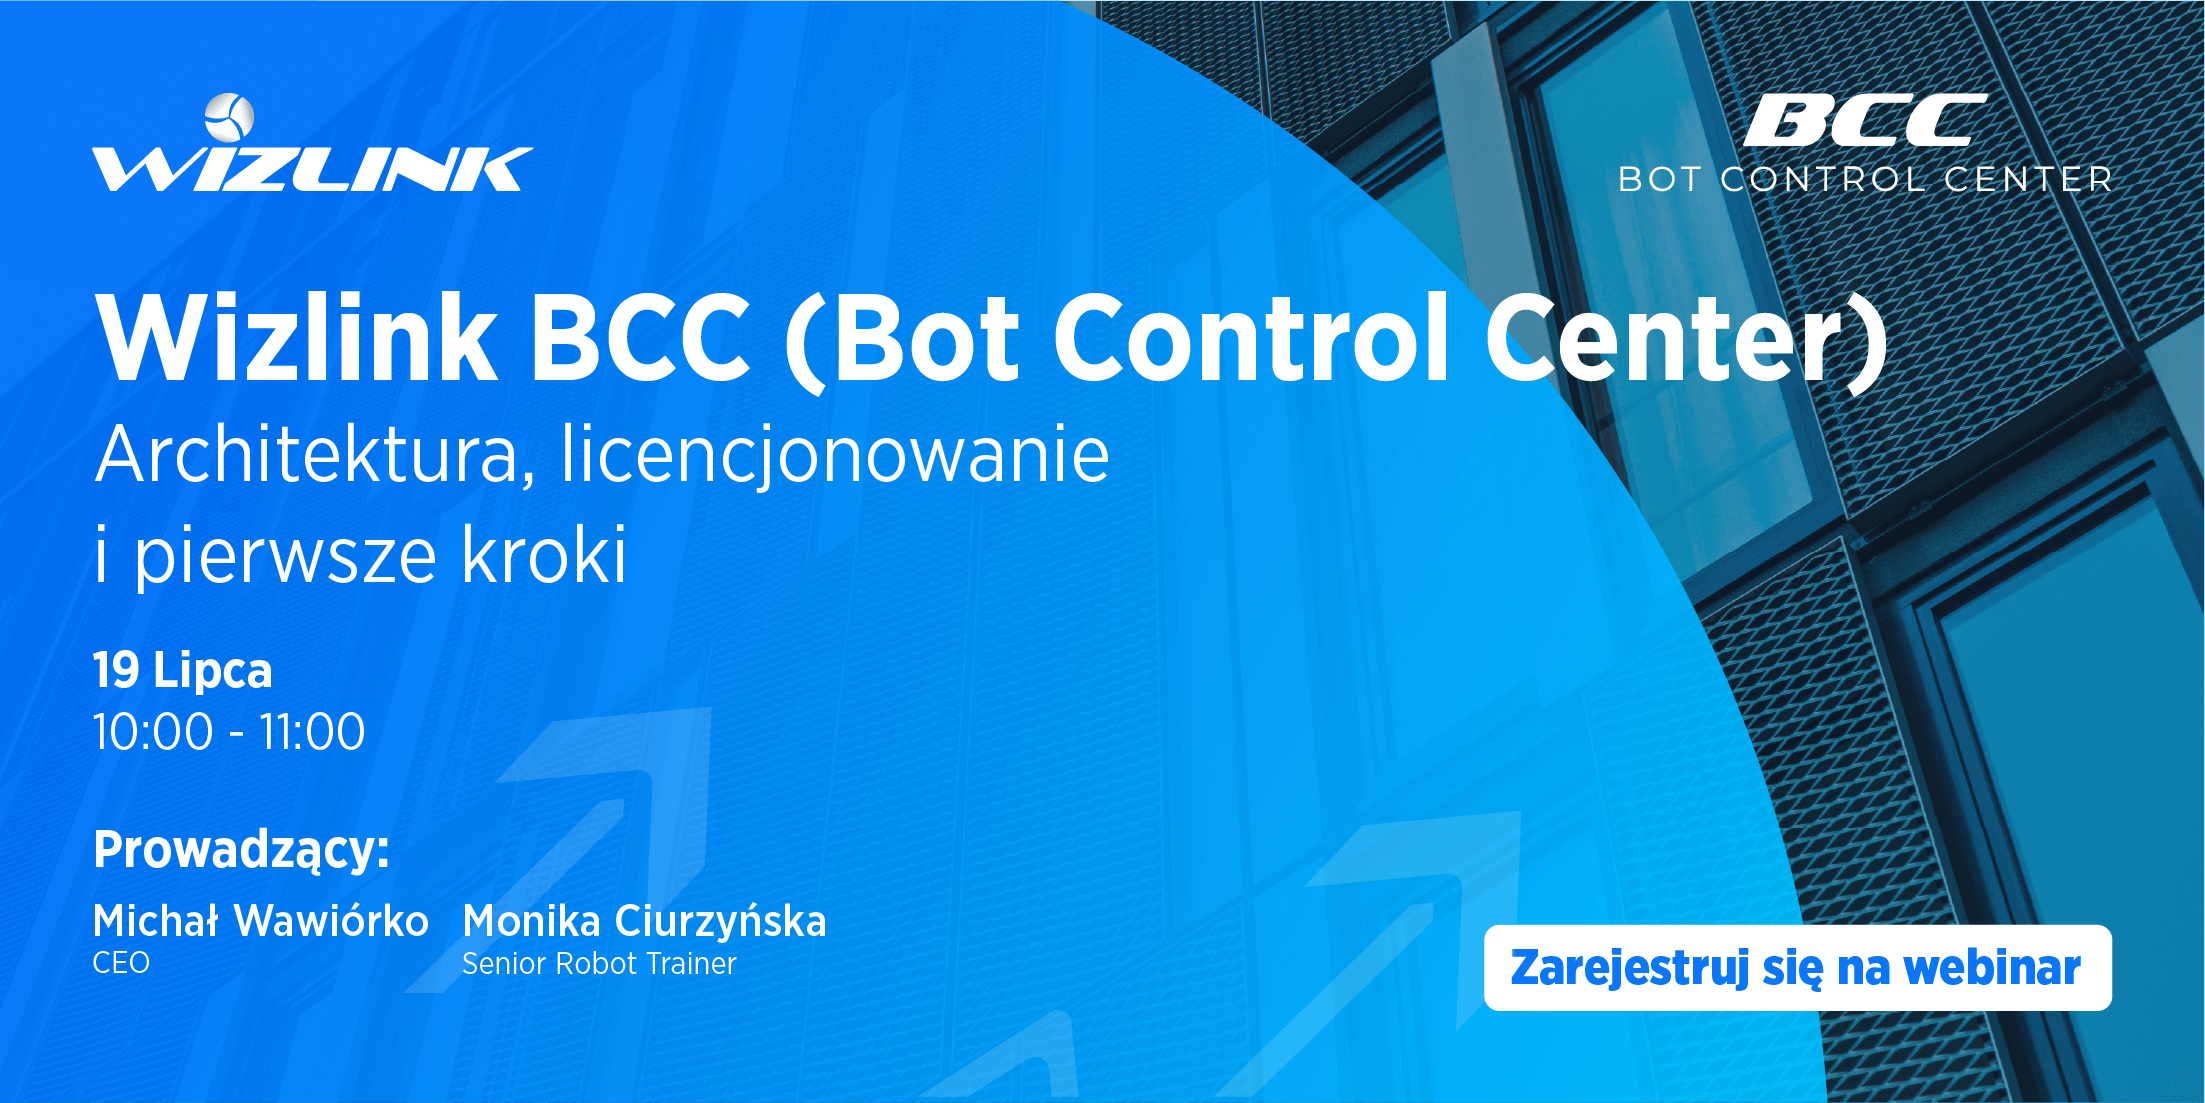 Wizlink BCC (Bot Control Center) - Architektura, licencjonowanie i pierwsze kroki